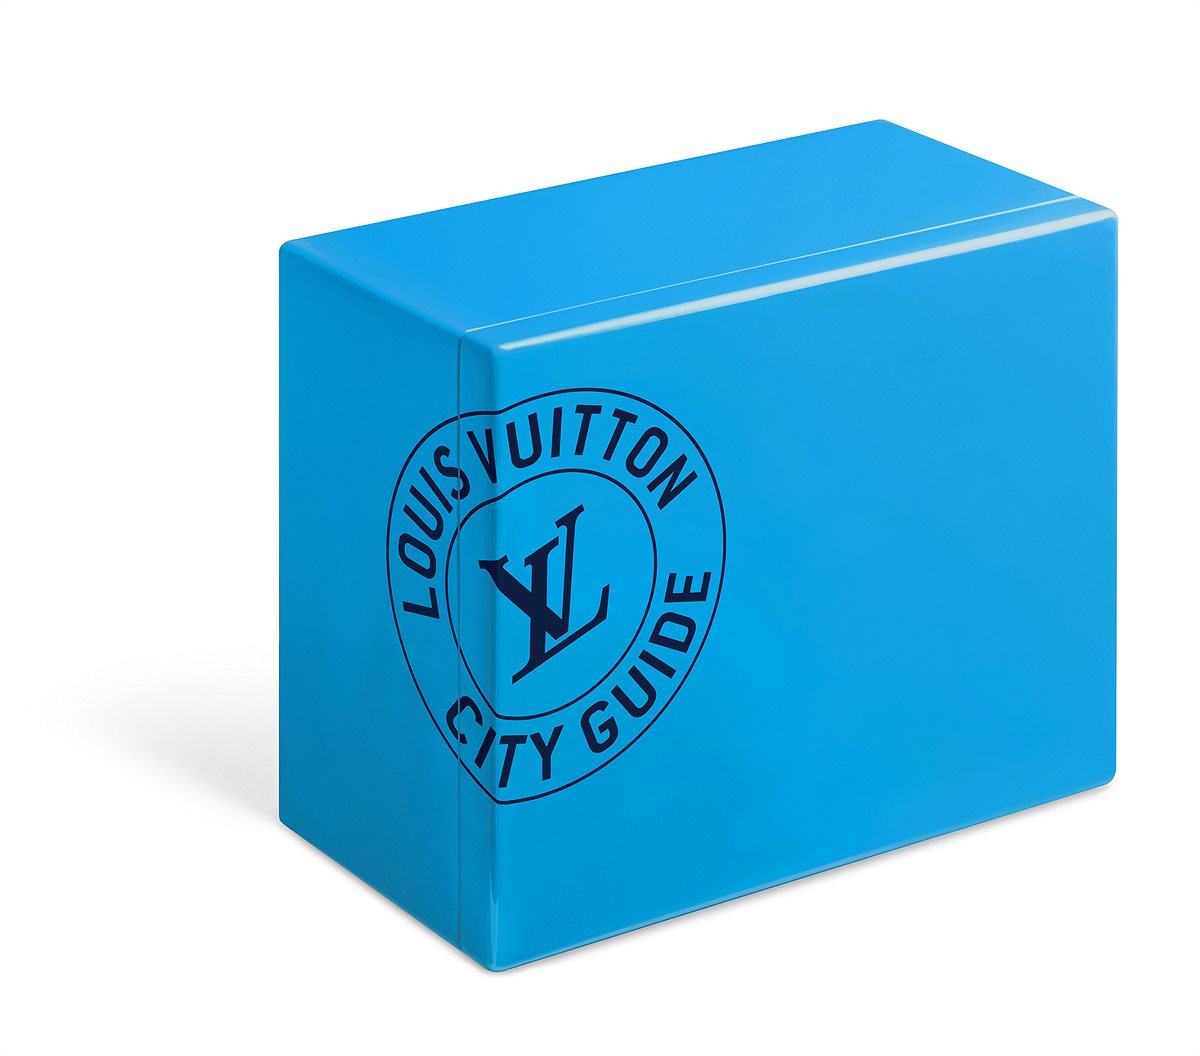 LOUIS VUITTON_City Guide Box Set_EUR 600_Sydney Blue